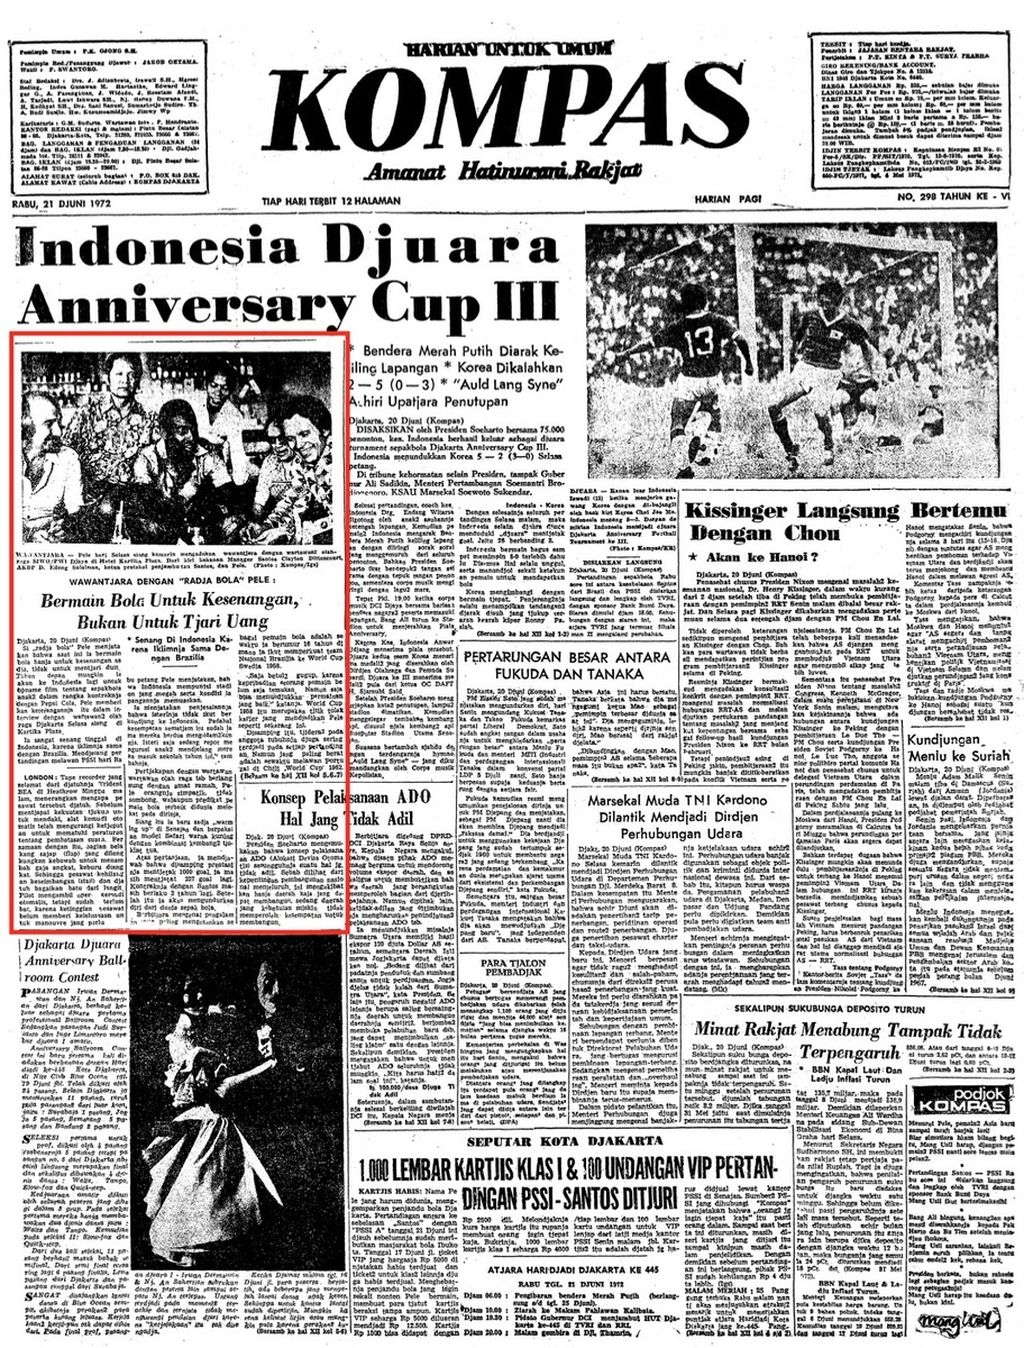 Tampilan halaman muka "Kompas" edisi, Rabu, 21 Juni 1972, yang menerbitkan berita tentang wawancara dengan Pele di sela kunjungan Santos ke Jakarta.